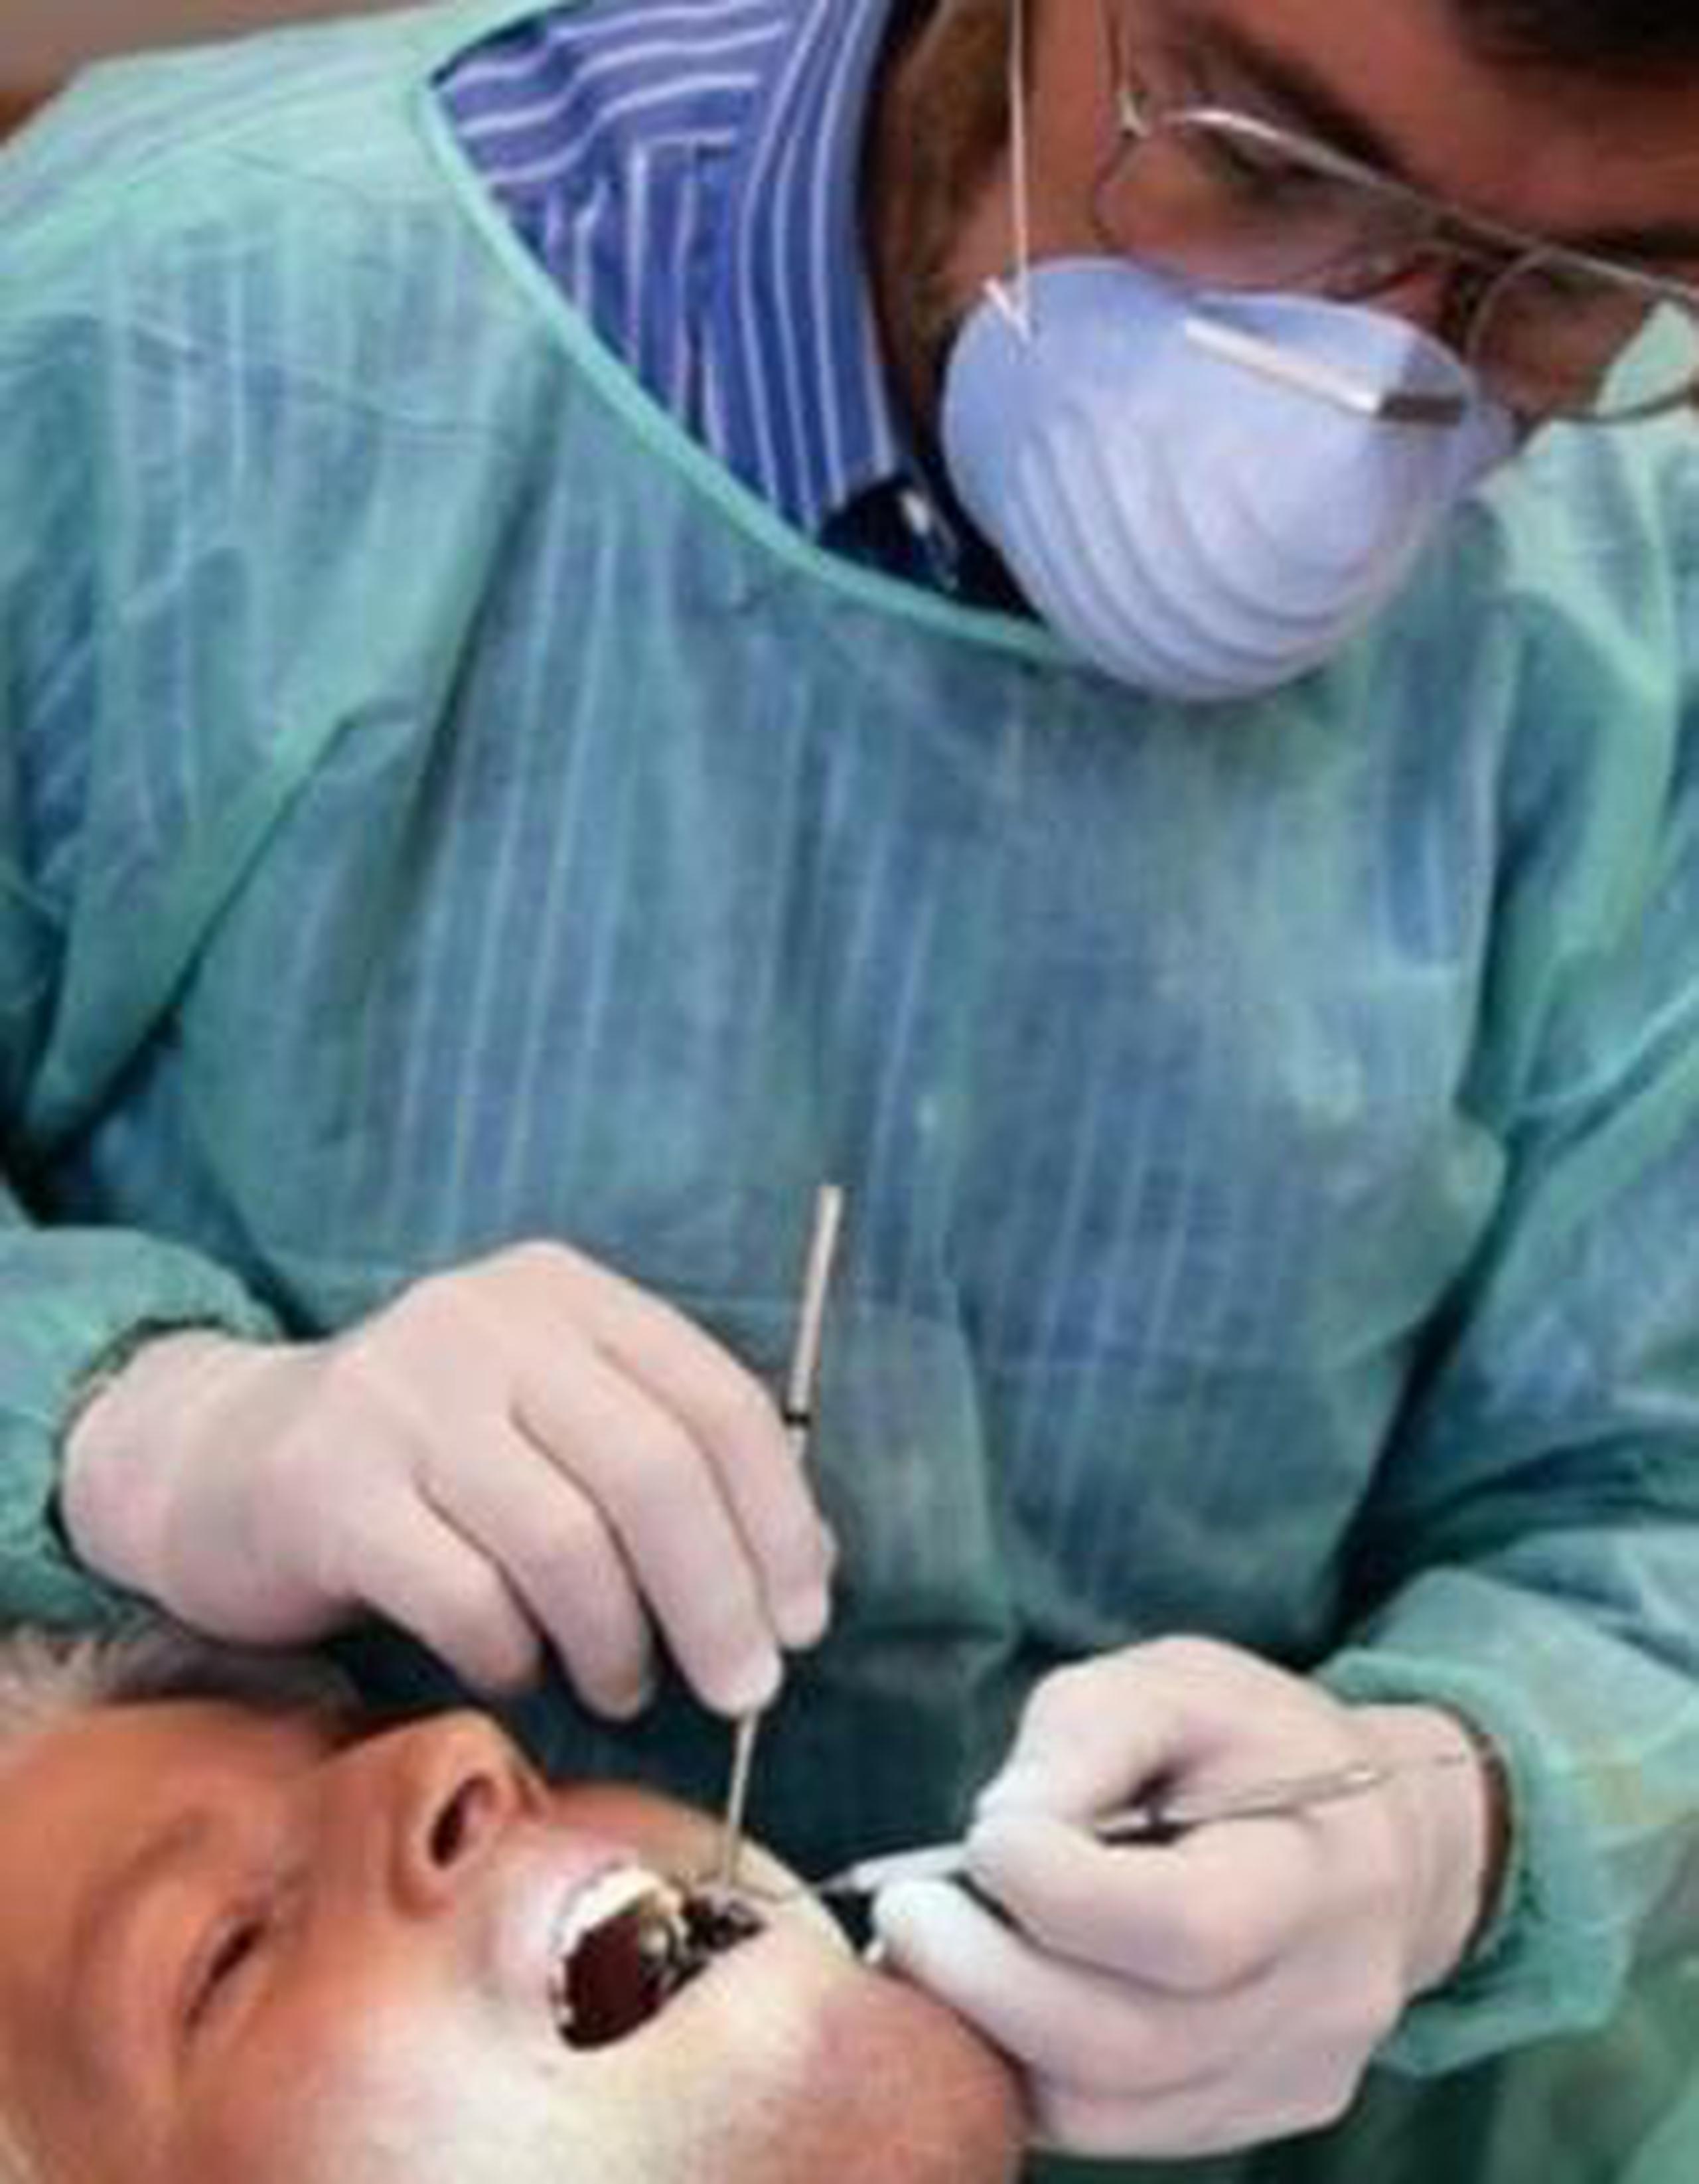 Se espera que la revisión de cubiertas y tarifas dentales mejore el acceso de los asegurados a los servicios dentales. (Archivo)